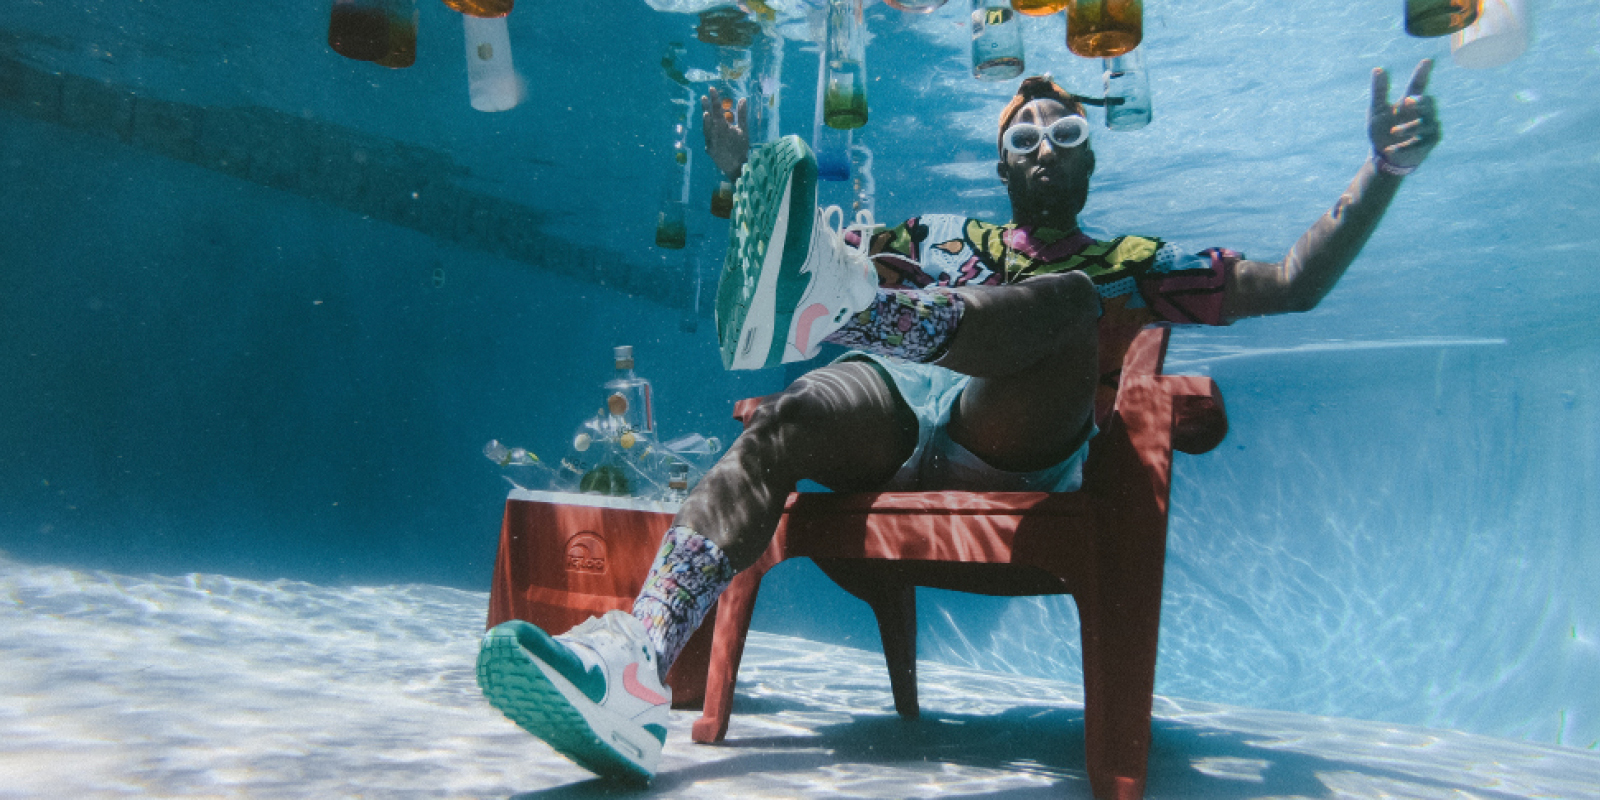 Mann sitzt unter Wasser in einem Pool, um in herum schweben Flaschen